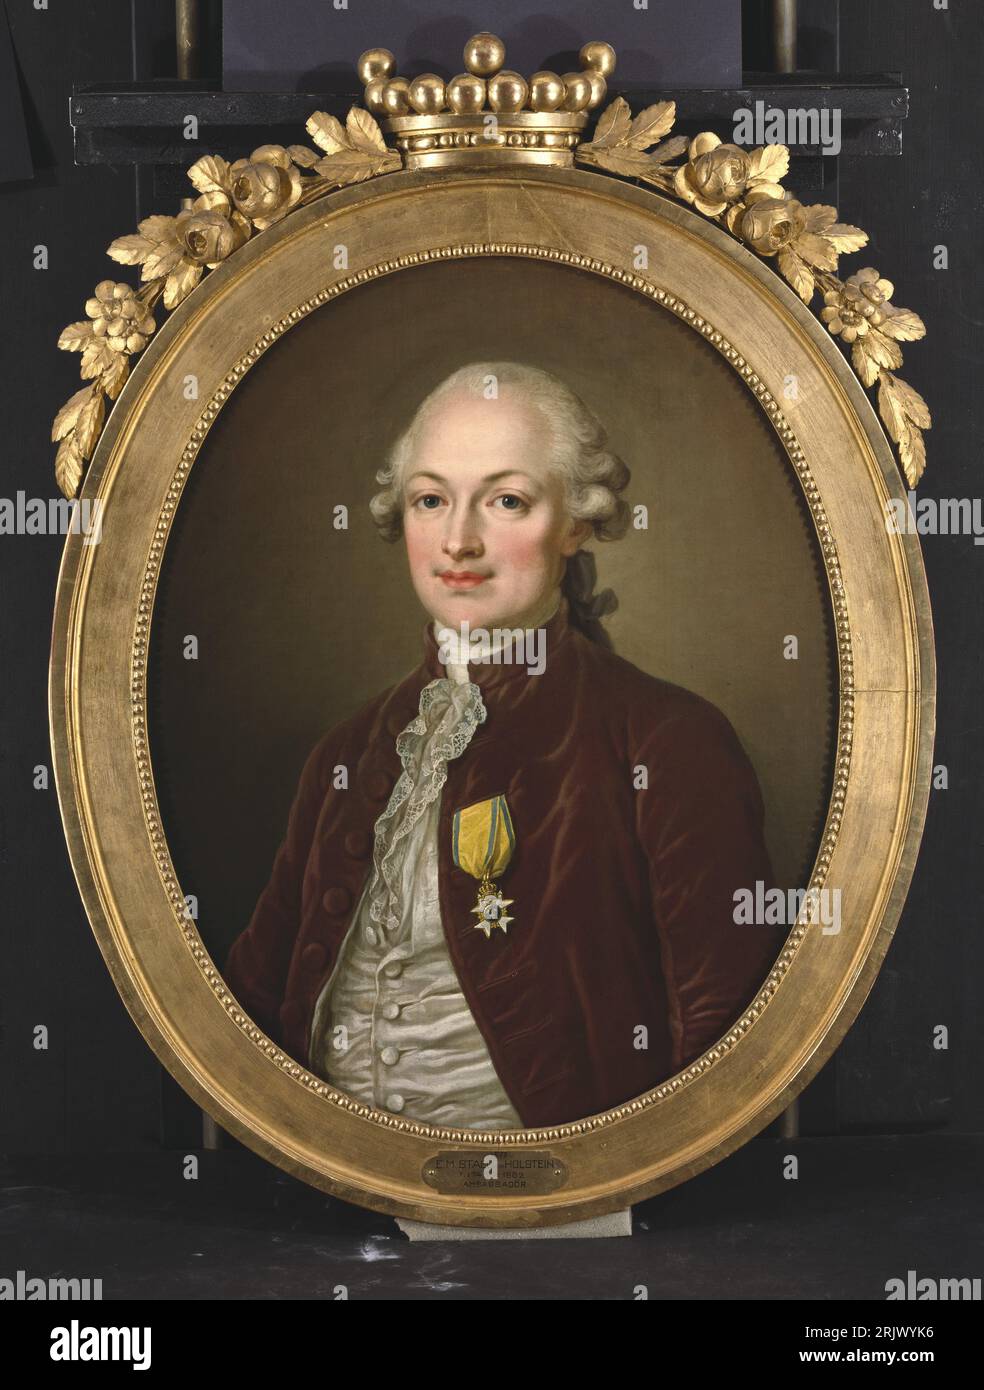 Erik Magnus Staël von Holstein (1749-1802), baron, lieutenant, ambassador to Paris, married to the author Anne Louise Germaine Necker 1796 by Ulrika Pasch Stock Photo